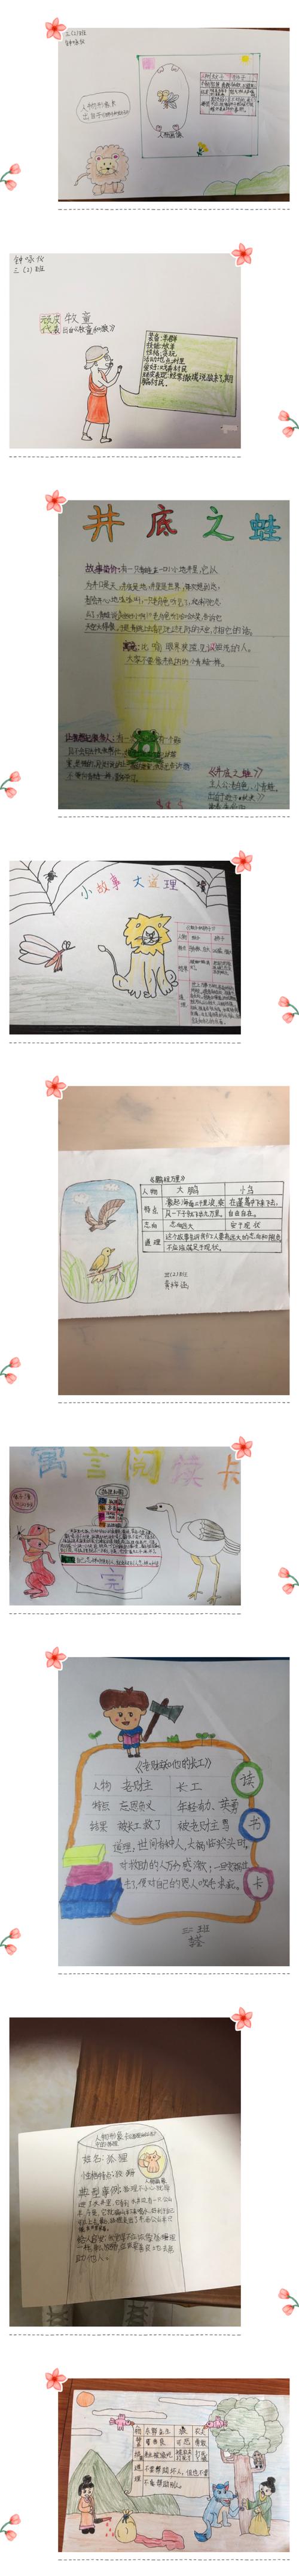 写美篇  在线上学习期间,老师推荐了课外阅读《中国古代寓言故事》